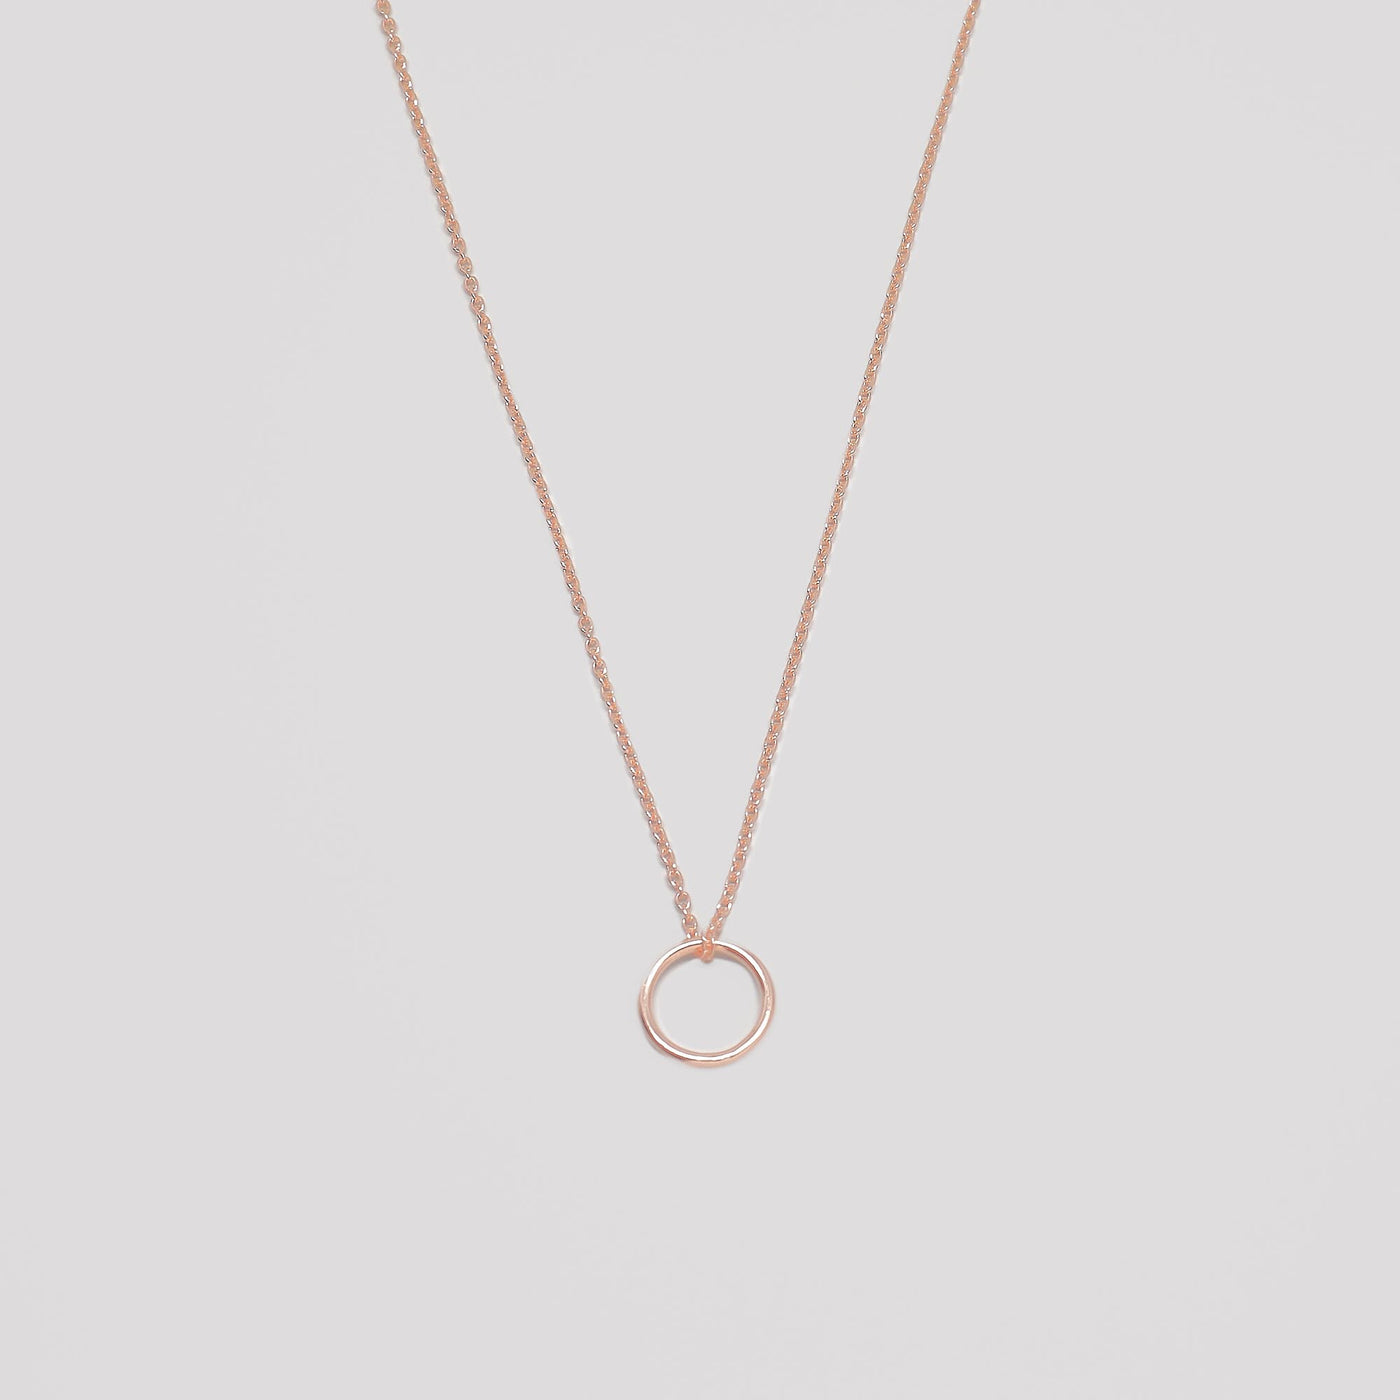 medium circle necklace - M / L